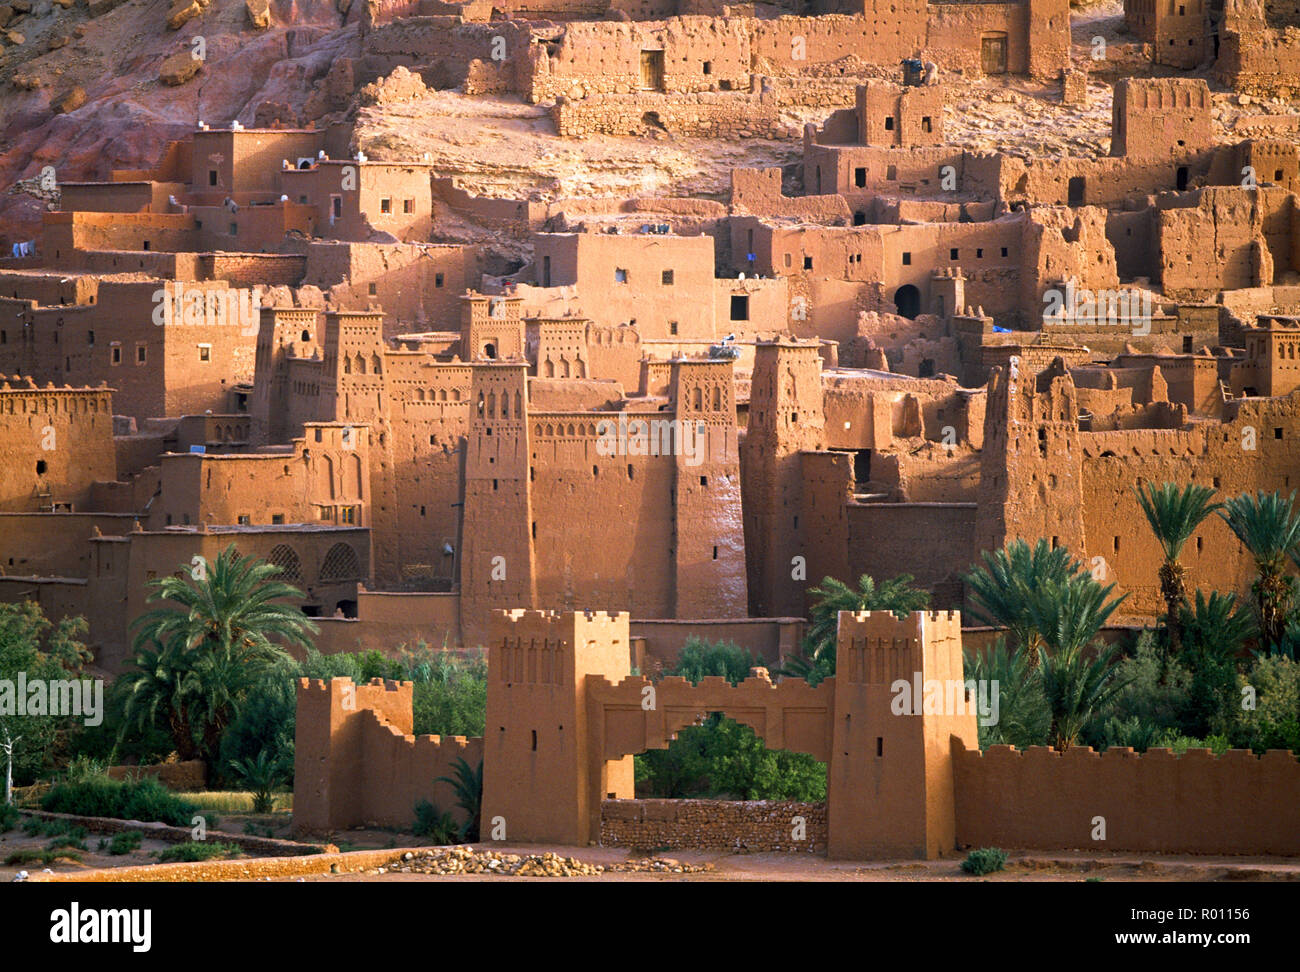 Edifici tradizionali nel deserto. Foto Stock